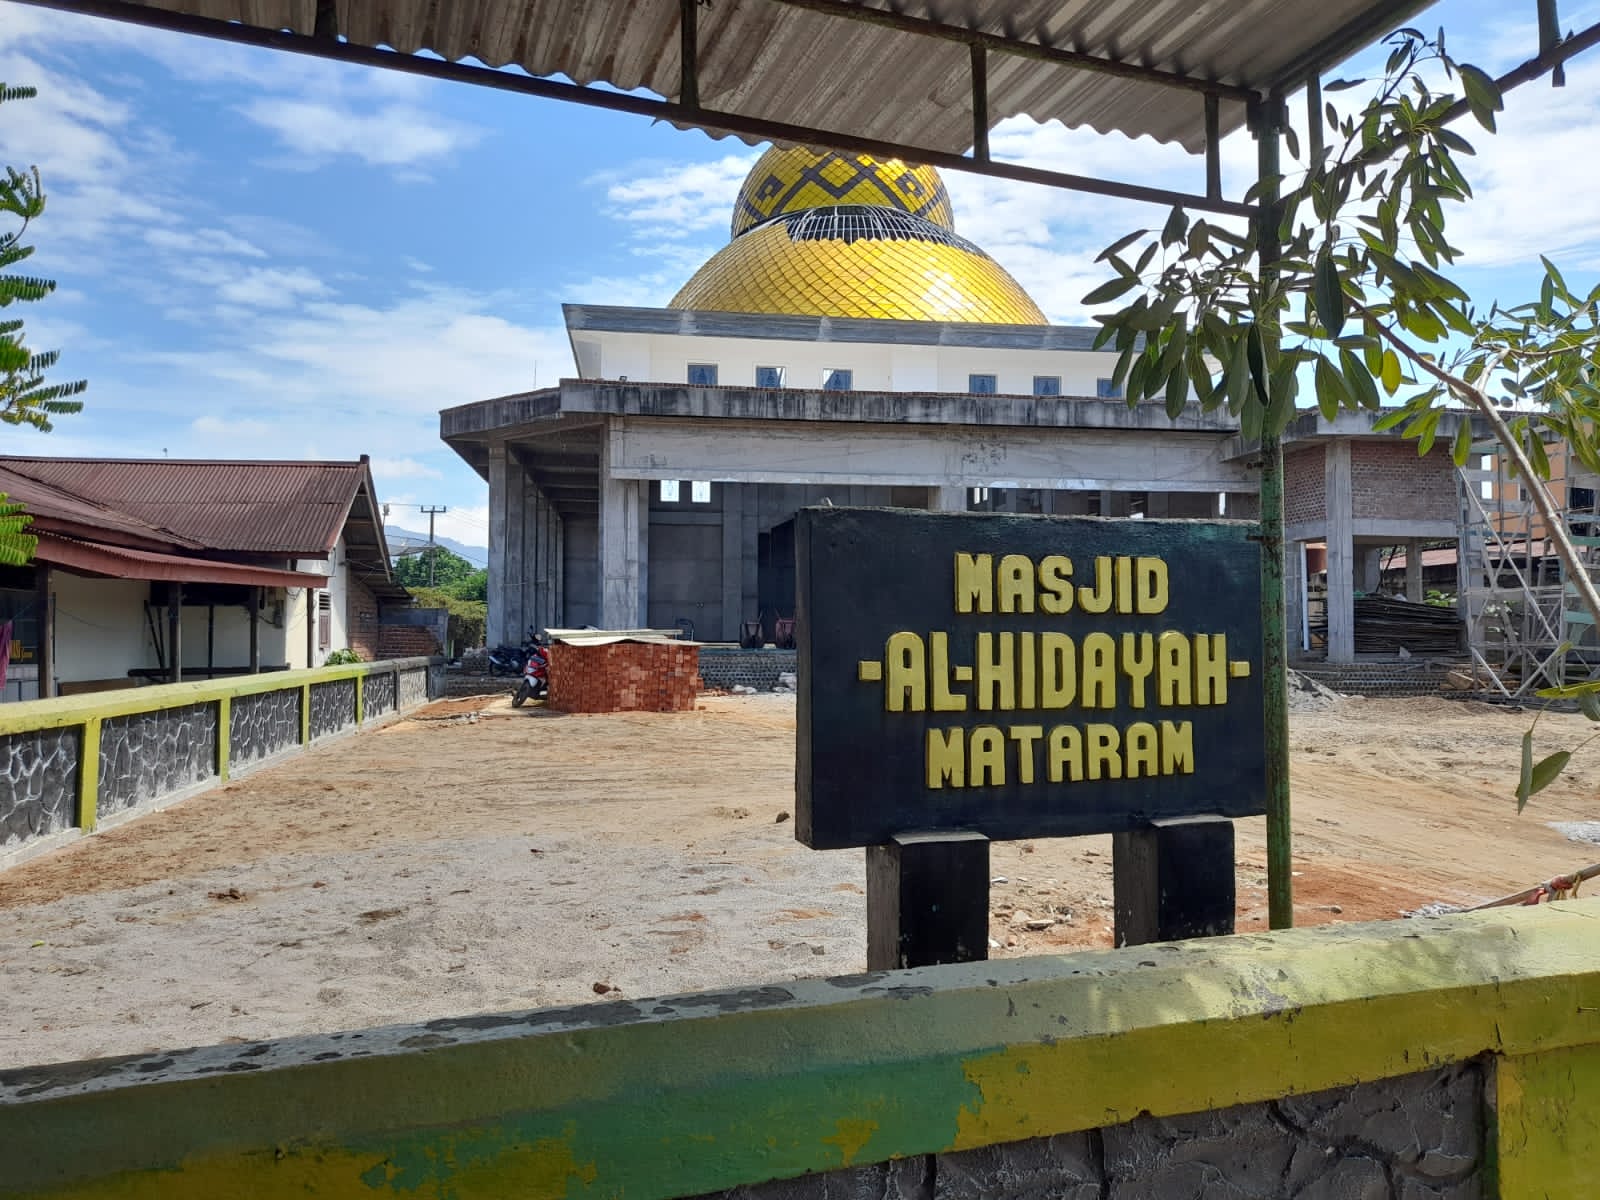 Warga Desa Mataram Kecamatan Tugumulyo Tunggu Bantuan PemKab Musi Rawas Untuk Selesaikan Pembangunan Masjid Al-Hidayah